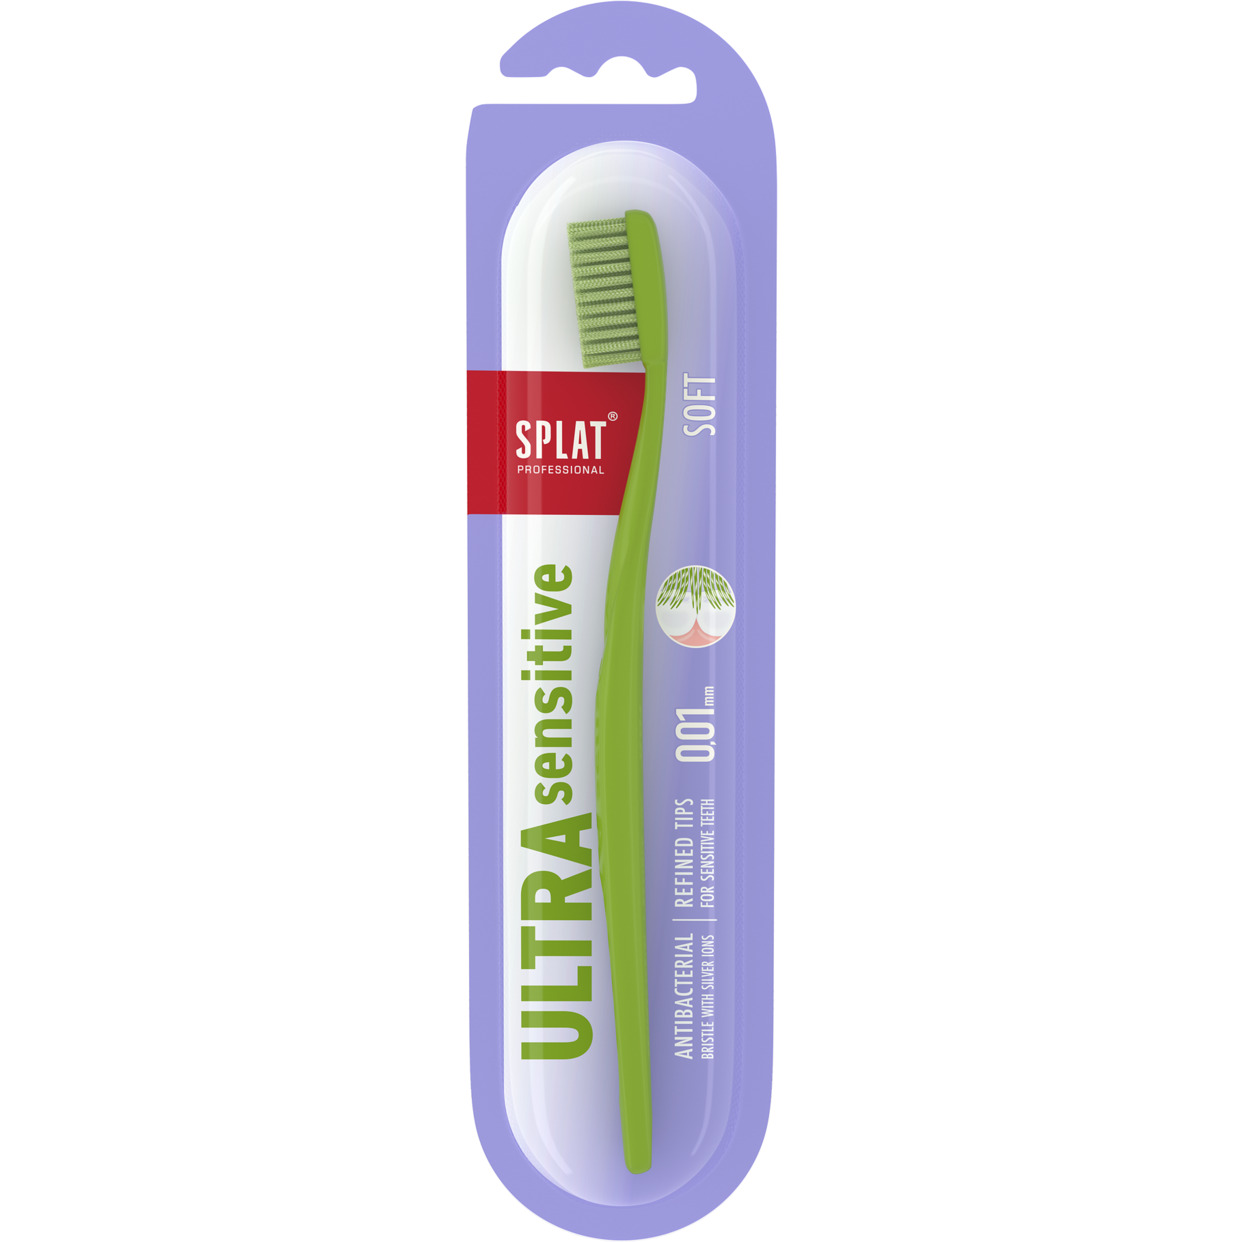 Инновационная зубная щетка SPLAT Professional ULTRA SENSITIVE. Soft / СПЛАТ Профешнл УЛЬТРА СЕНСИТИВ. Мягкая.